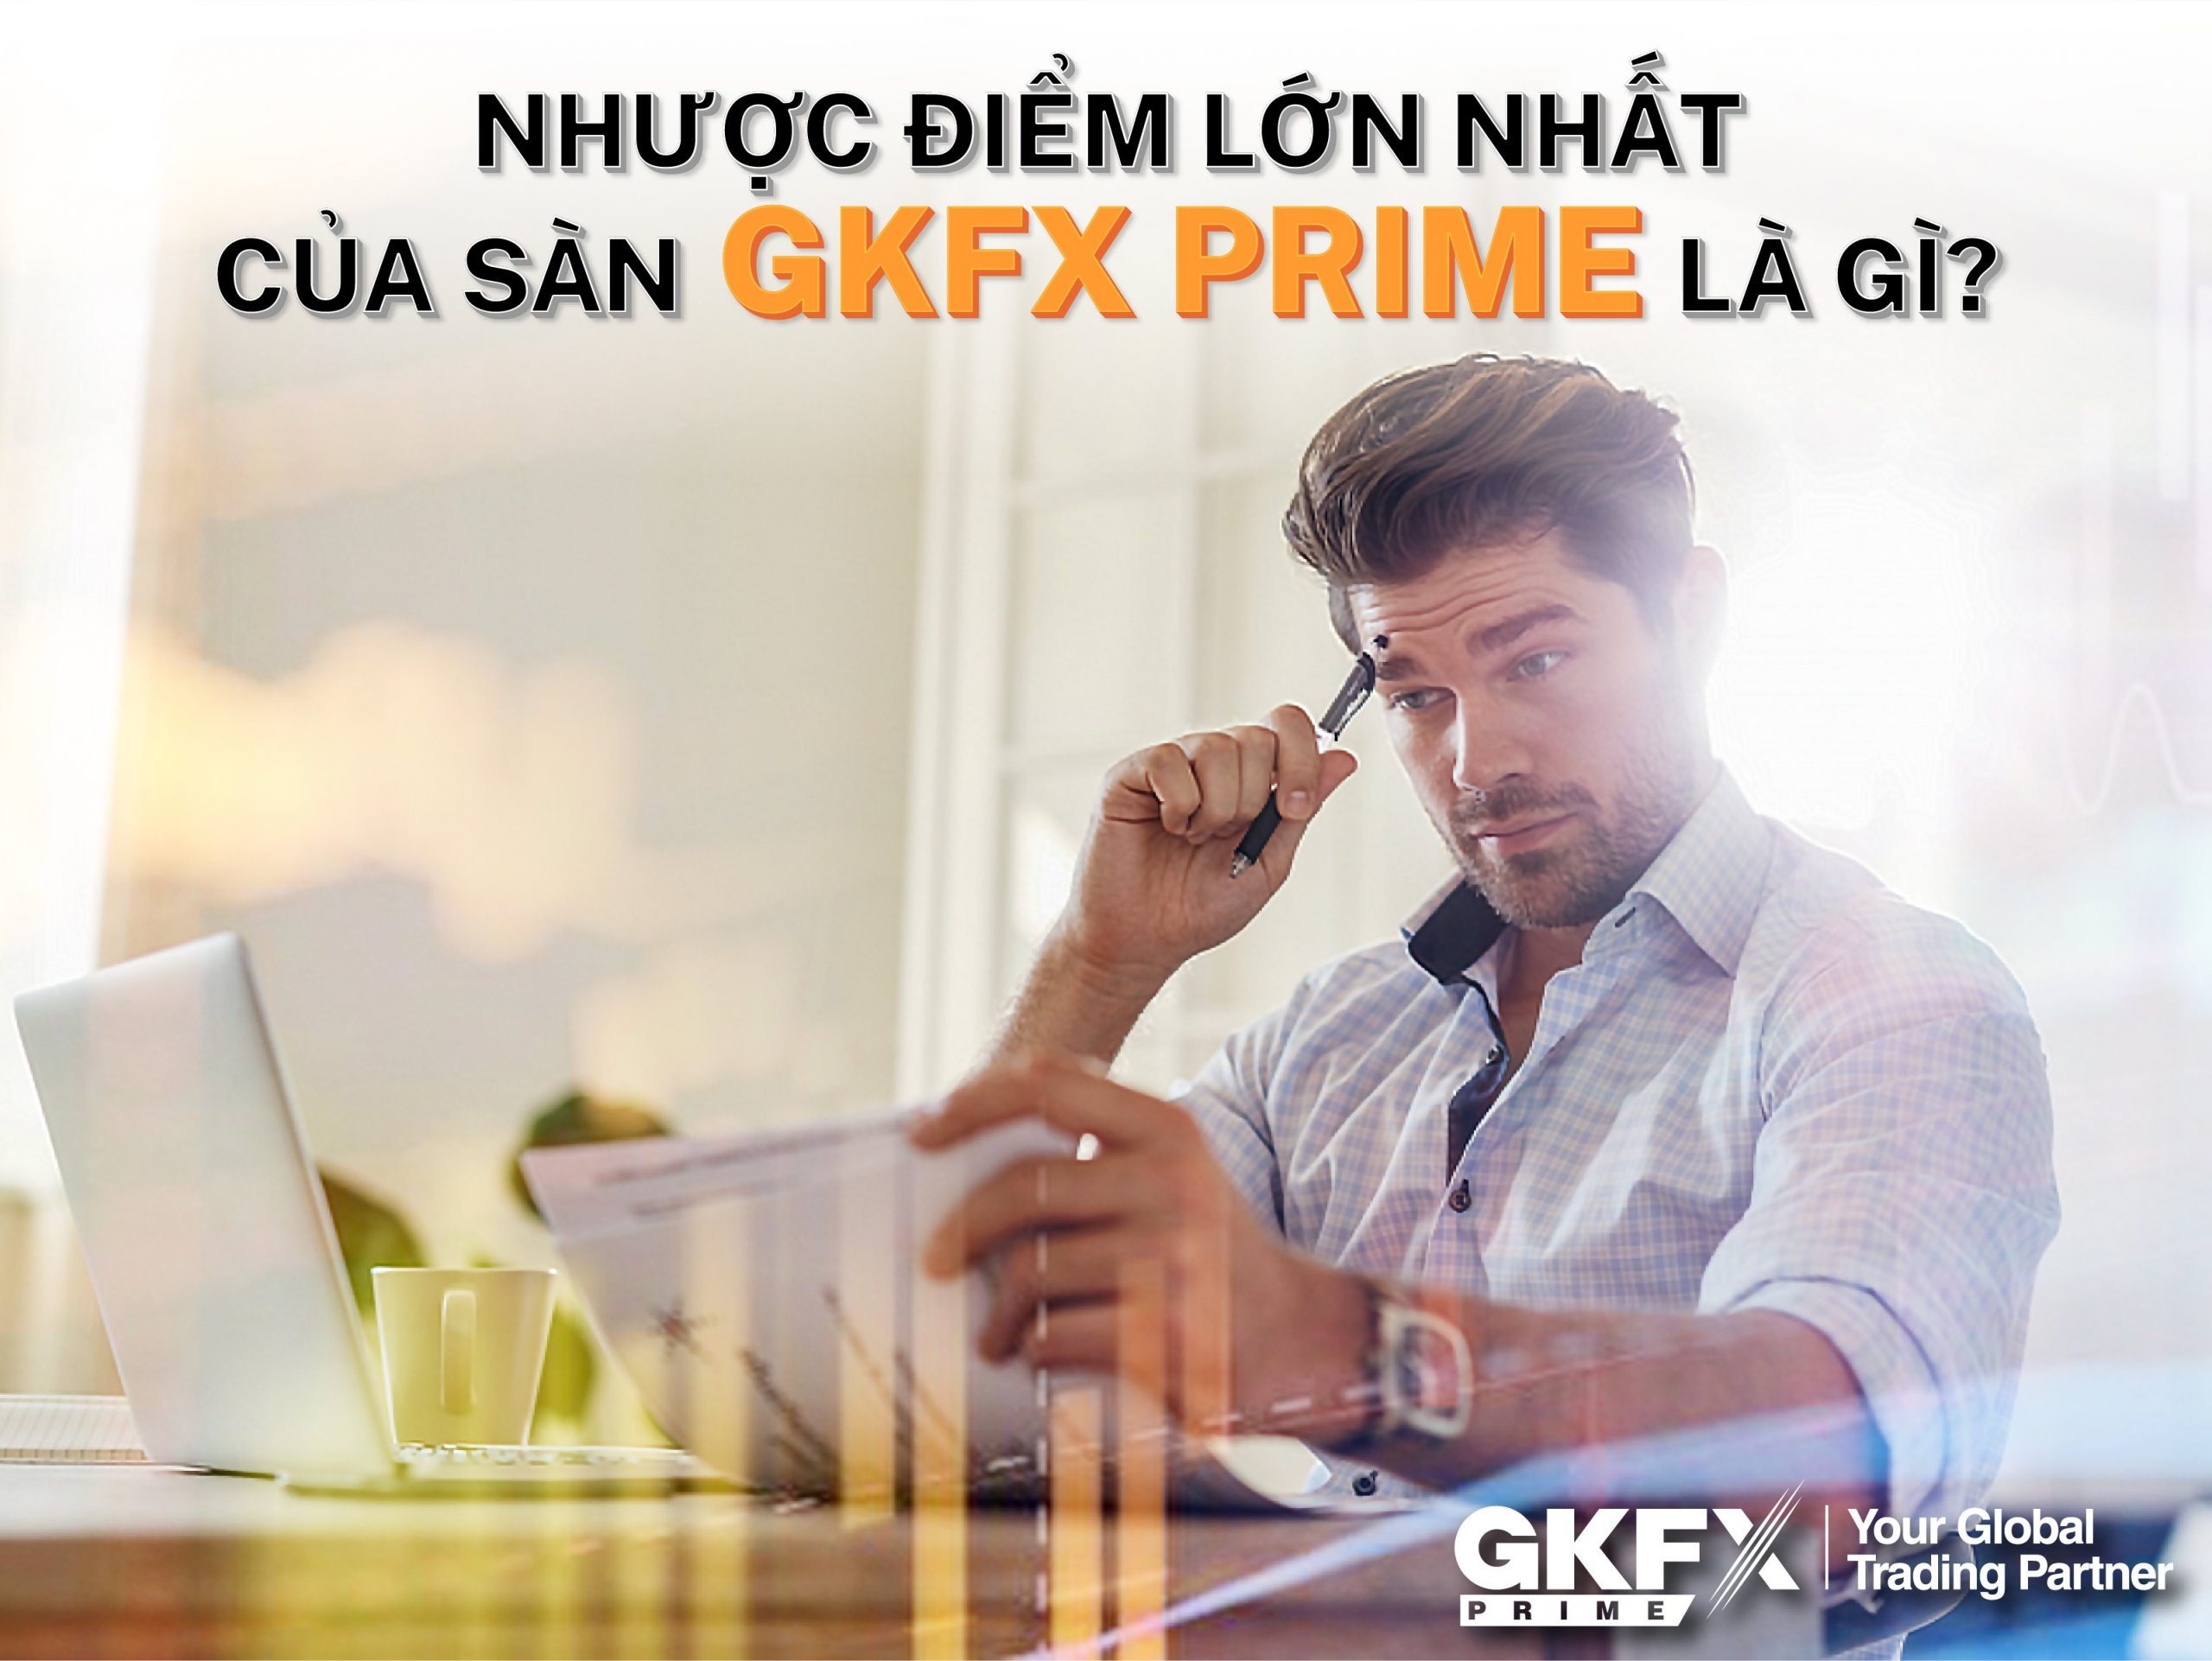 Nhược Điểm Của Sàn GKFX Prime Vietnam - Vtradetop.com